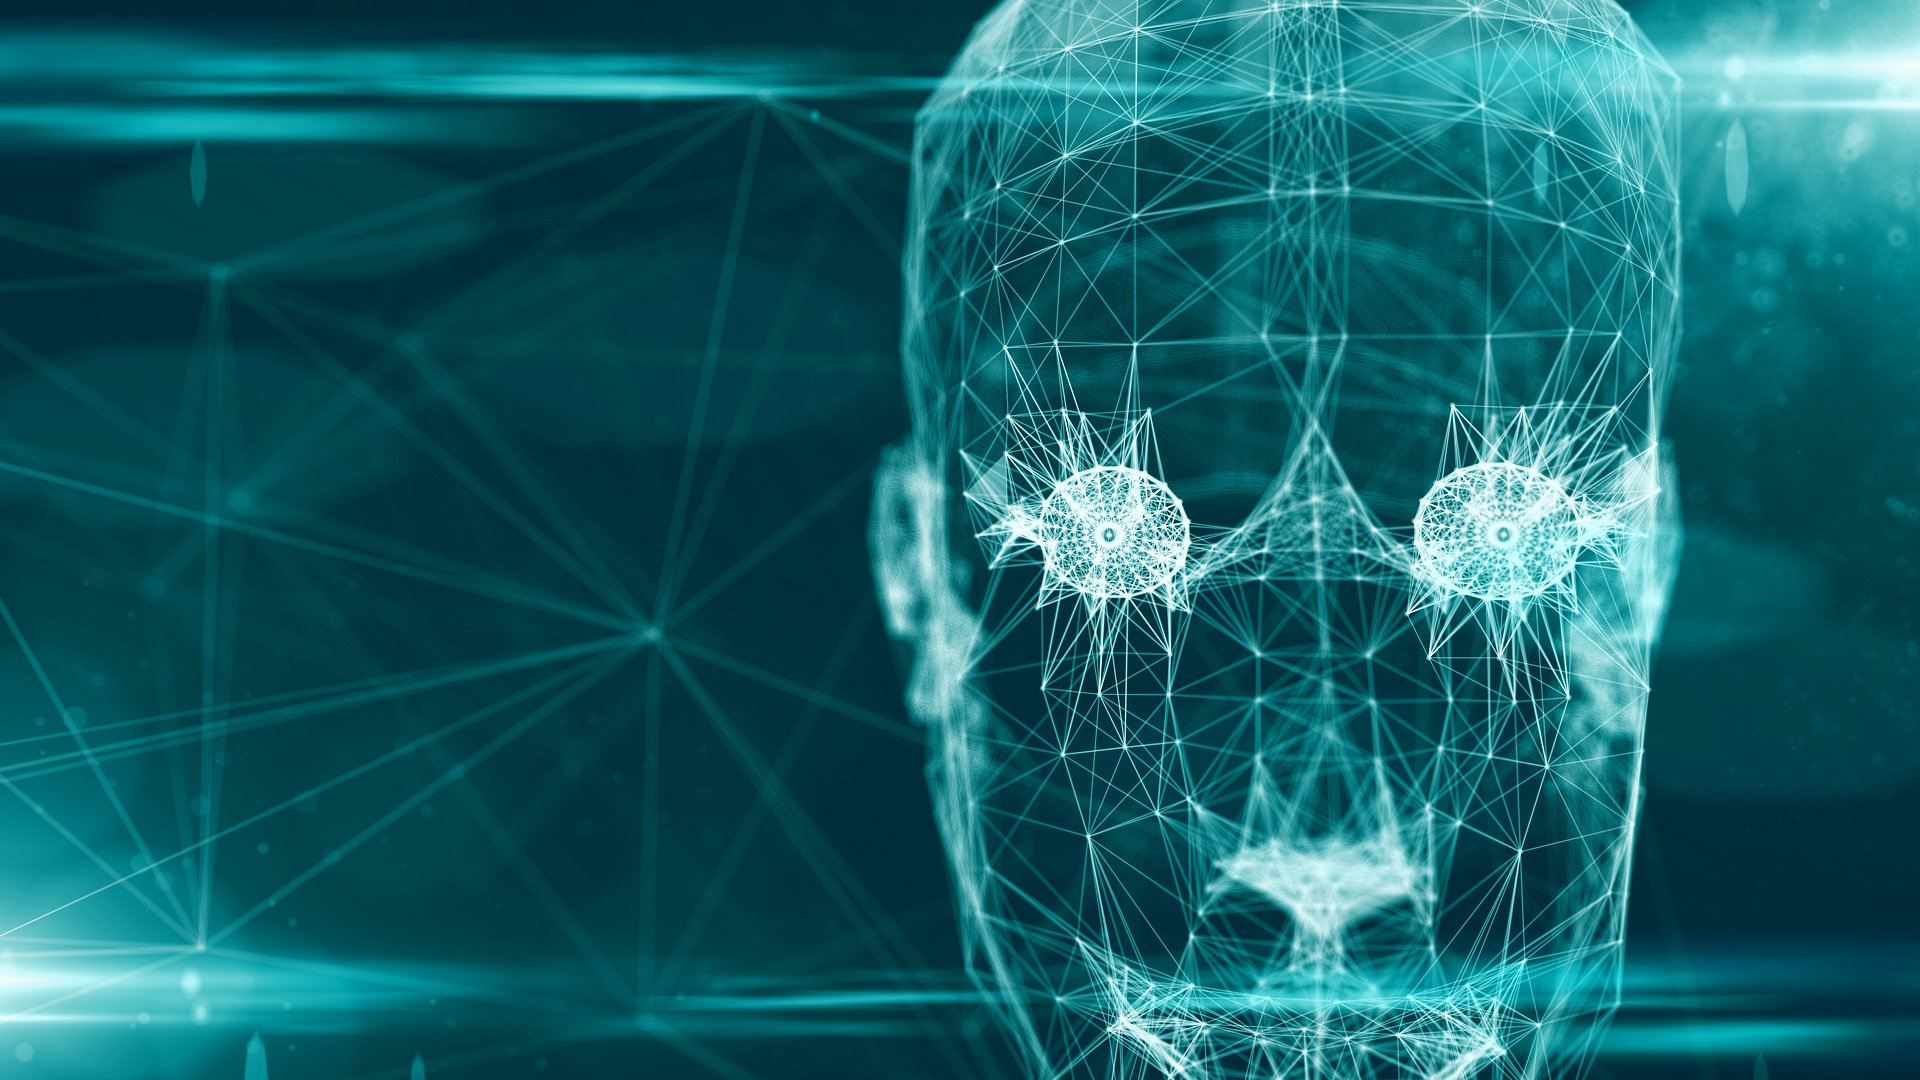 L'intelligence artificielle dans l'année 2019: déjà Terminator ou pas encore?